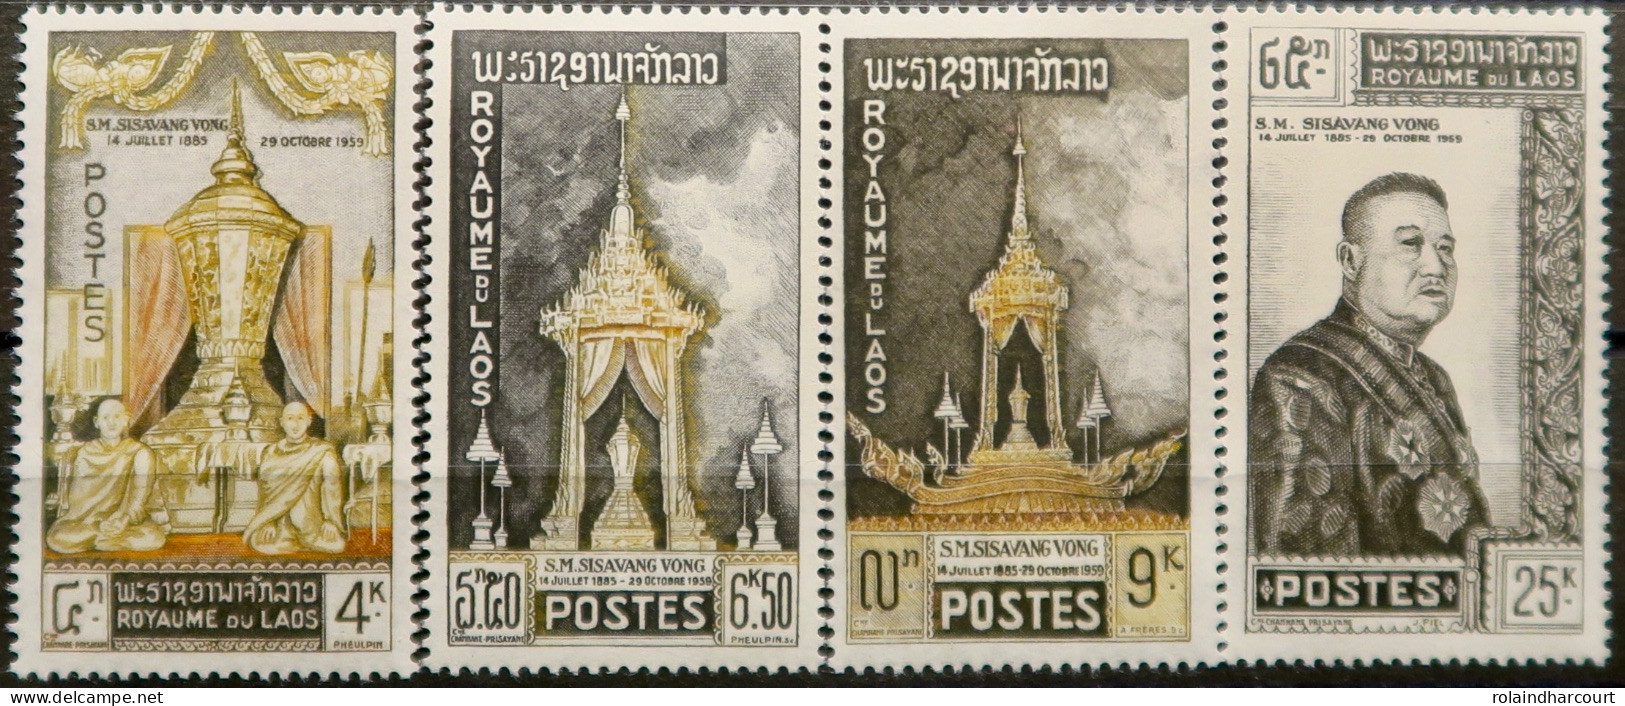 R2253/590 - 1961 - LAOS - Hommage Au Roi - N°71 à 74 NEUFS* - Laos